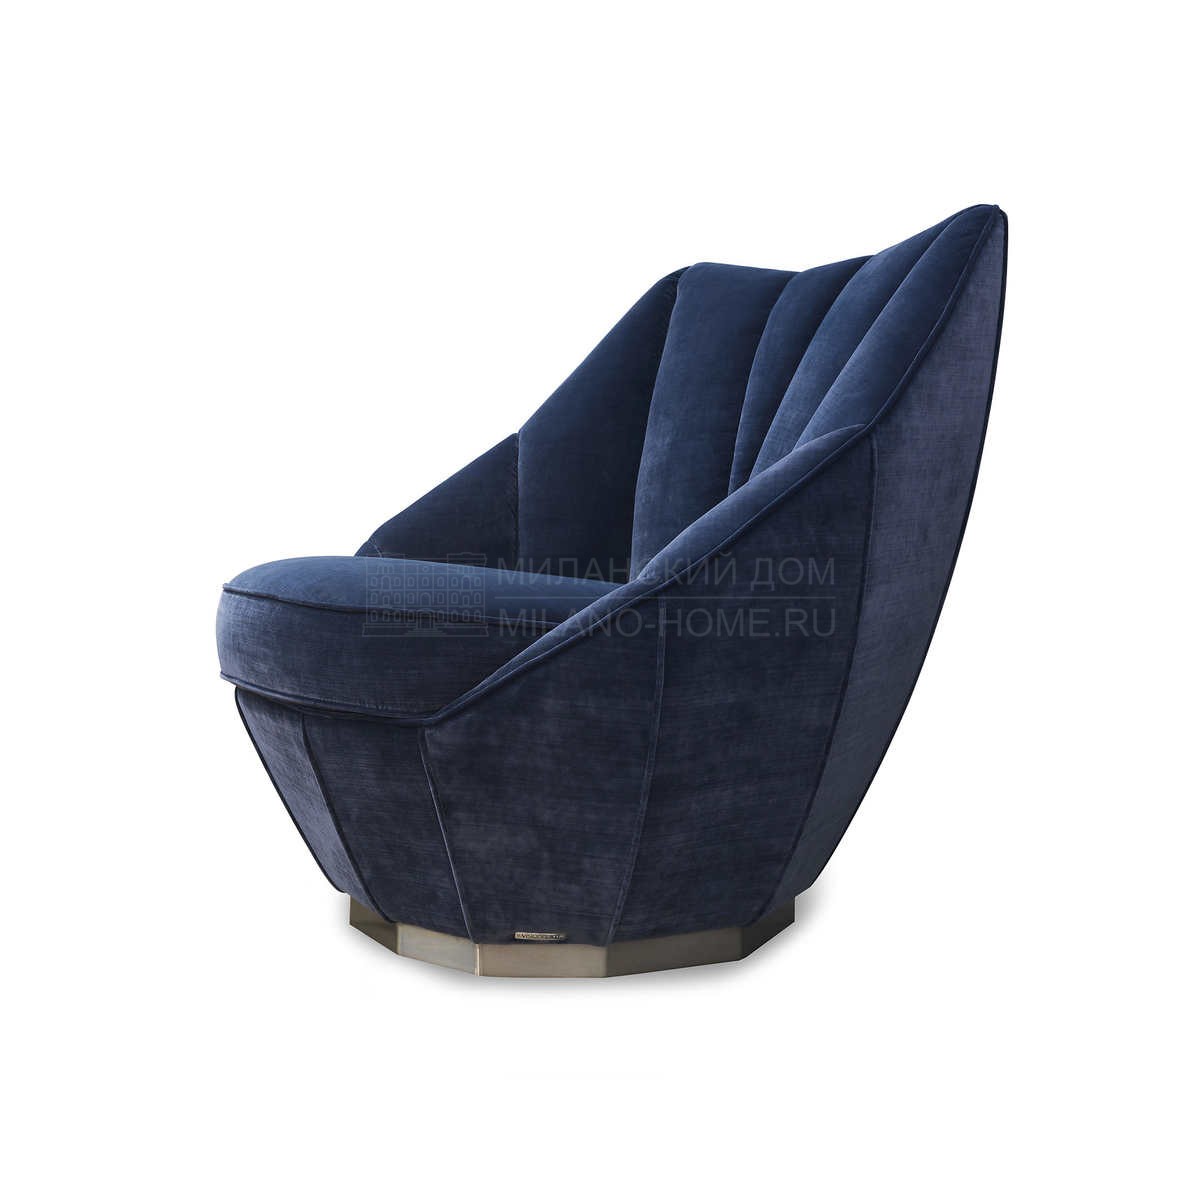 Круглое кресло Sontag armchair из Италии фабрики IPE CAVALLI VISIONNAIRE